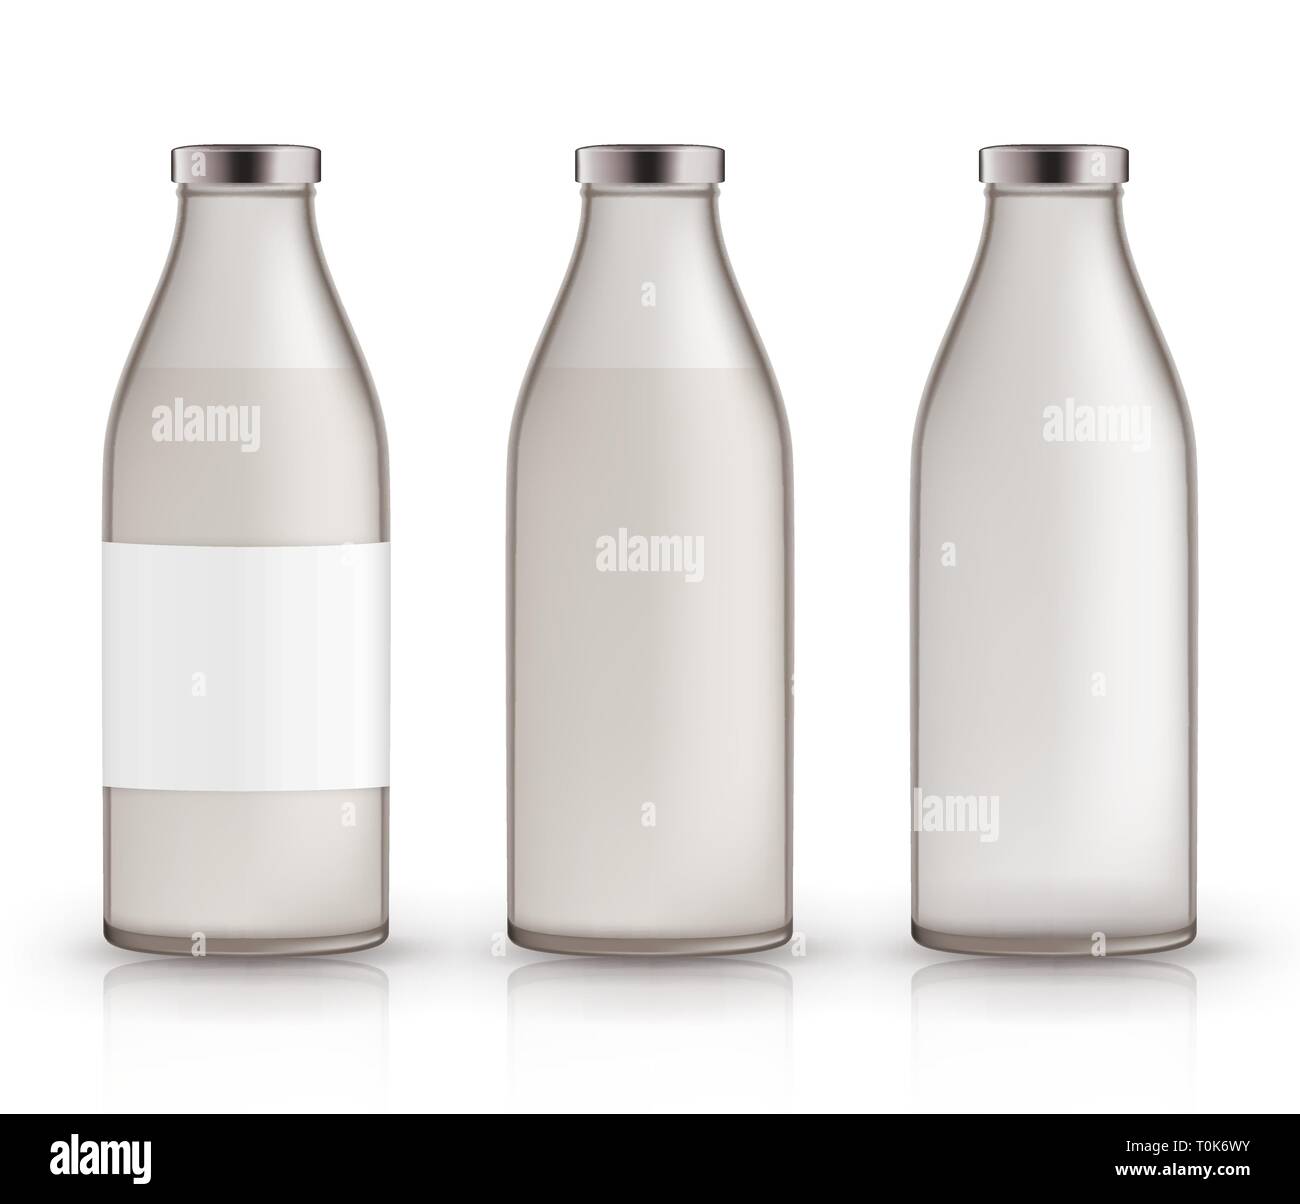 Vide, plein, fermé les pots de lait. Bouteilles en verre réaliste avec un liquide, l'étiquette. Illustration de Vecteur